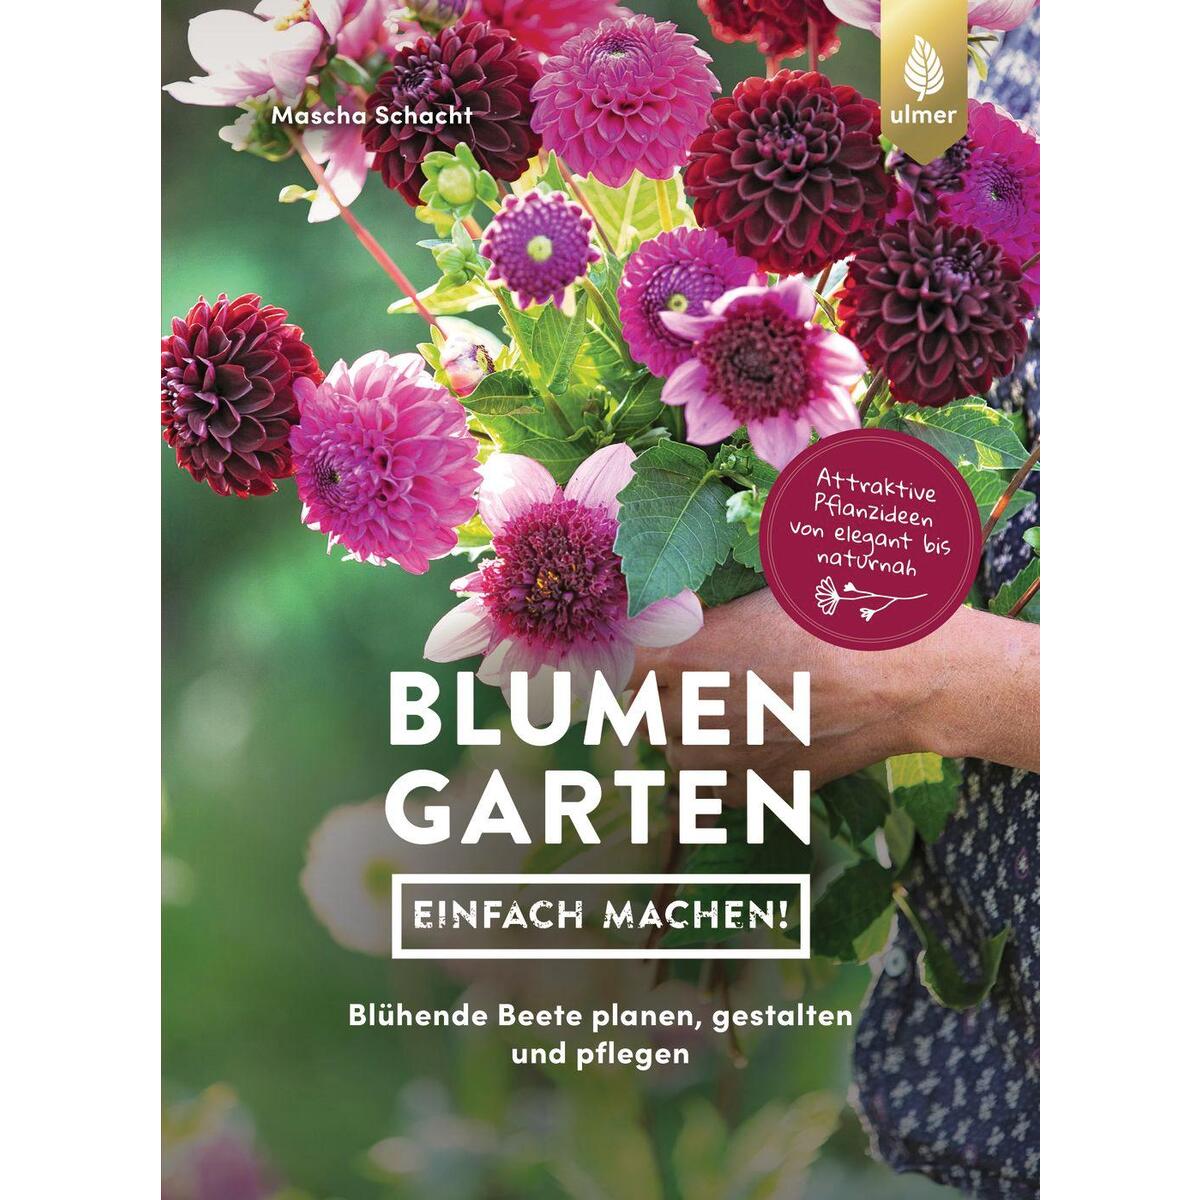 Blumengarten - einfach machen! von Ulmer Eugen Verlag